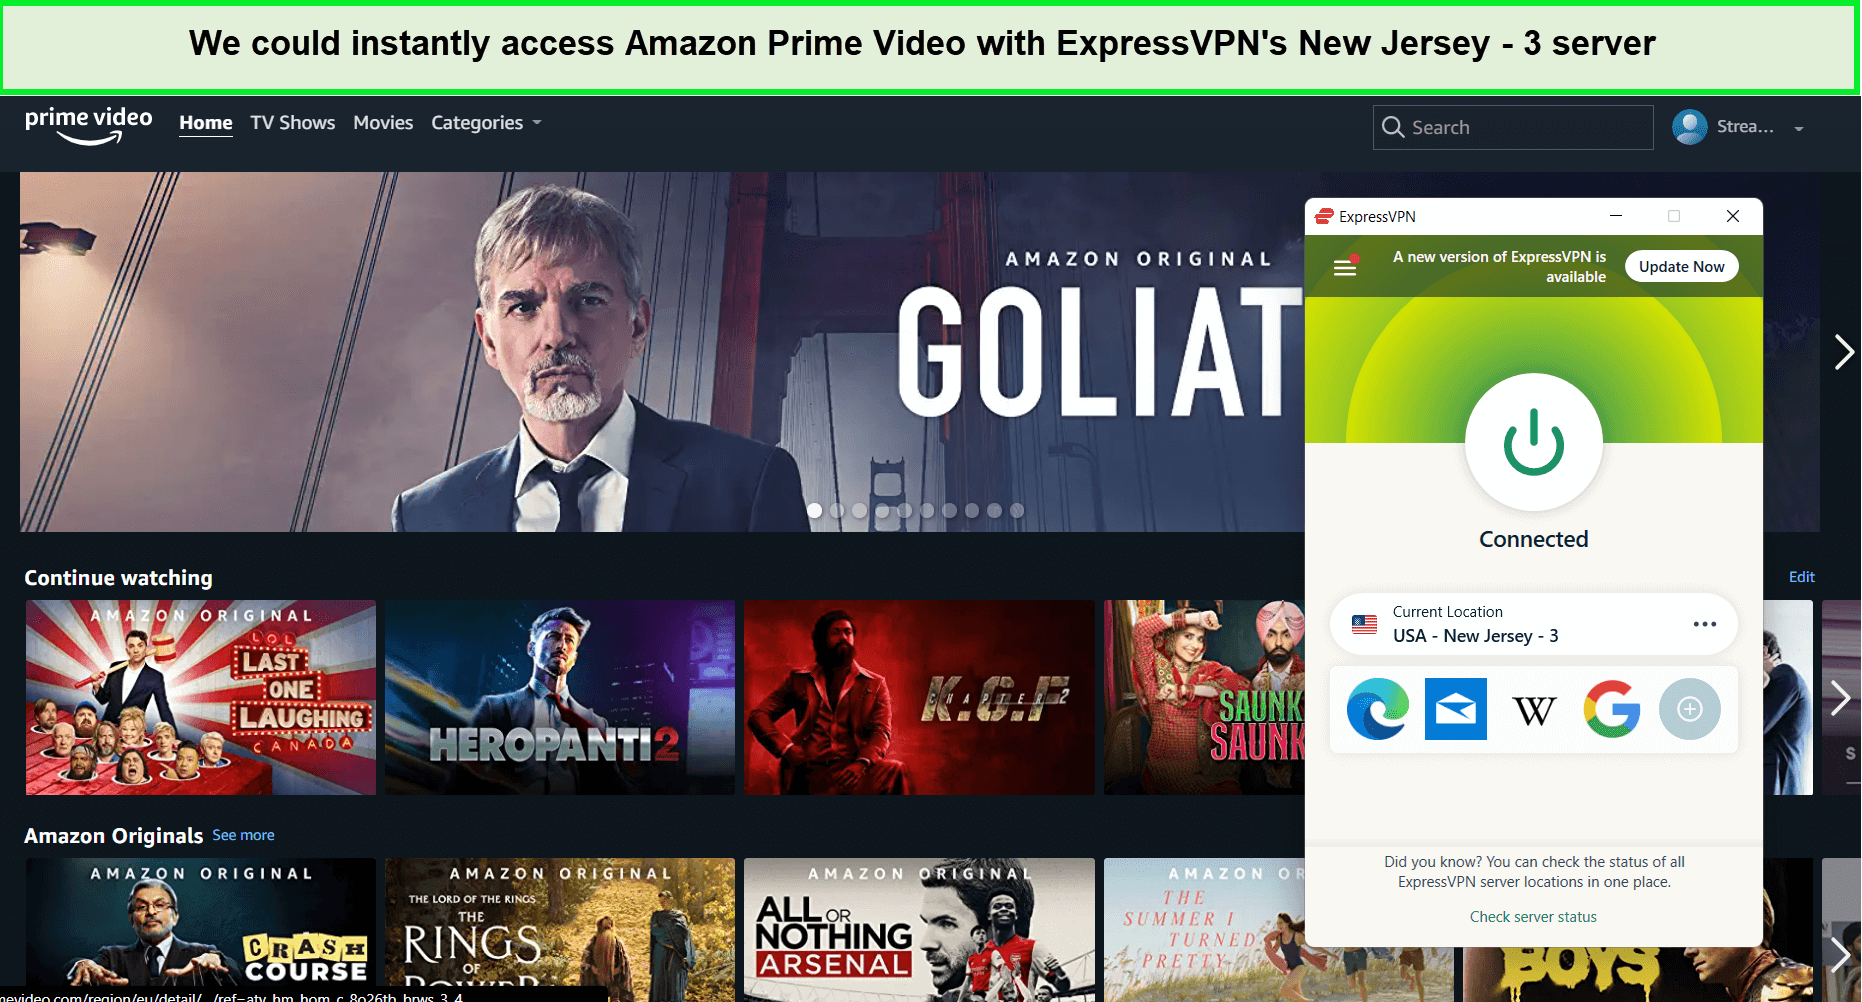  ExpressVPN desbloquea Amazon Prime Video in - Espana 